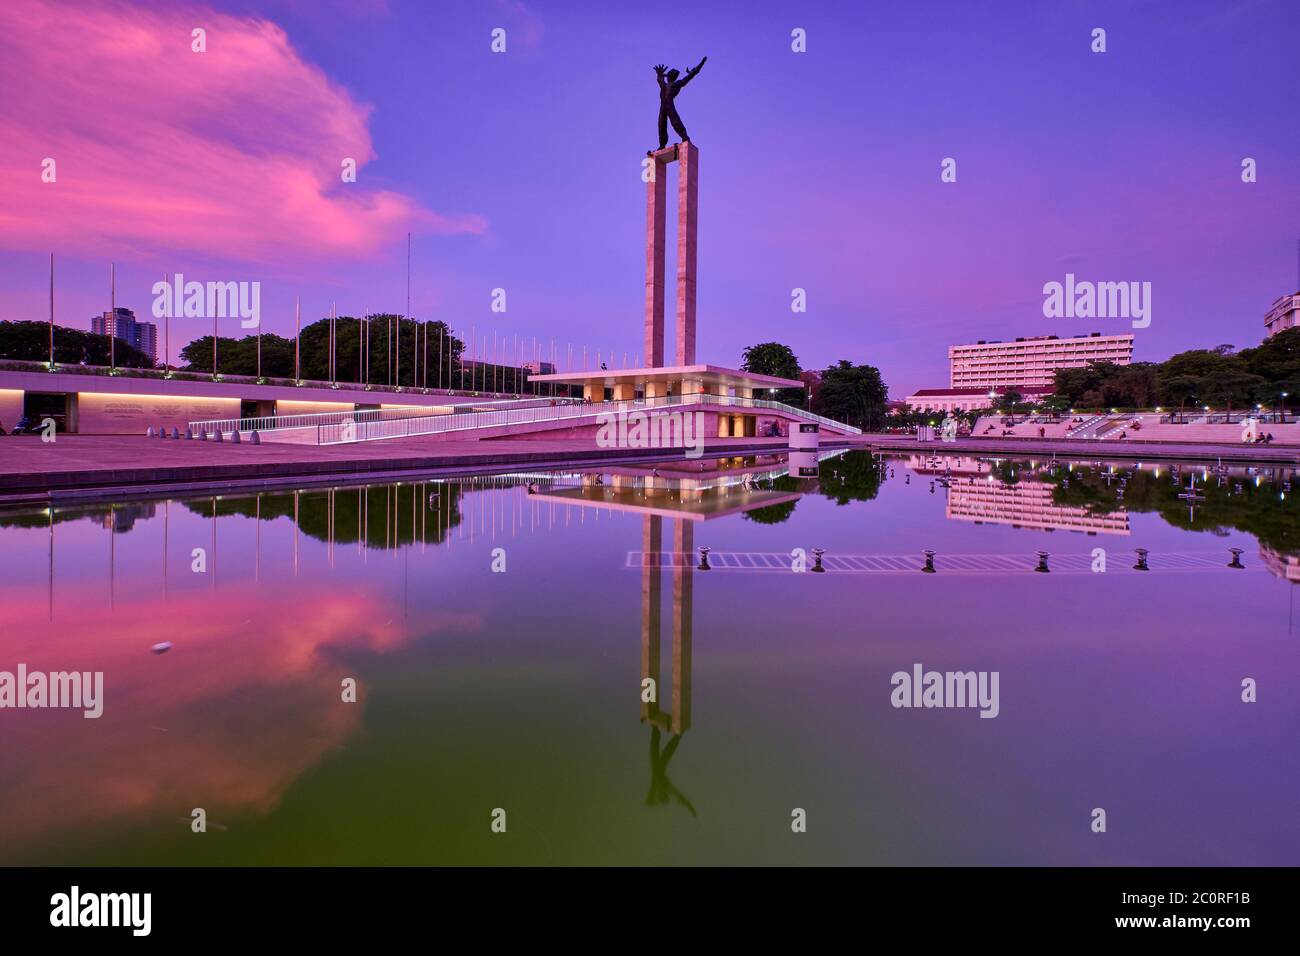 Irian Jaya Liberation Monument, Jakarta im Sonnenuntergang mit Spiegelung des wolkigen Himmels auf dem Wasser Stockfoto